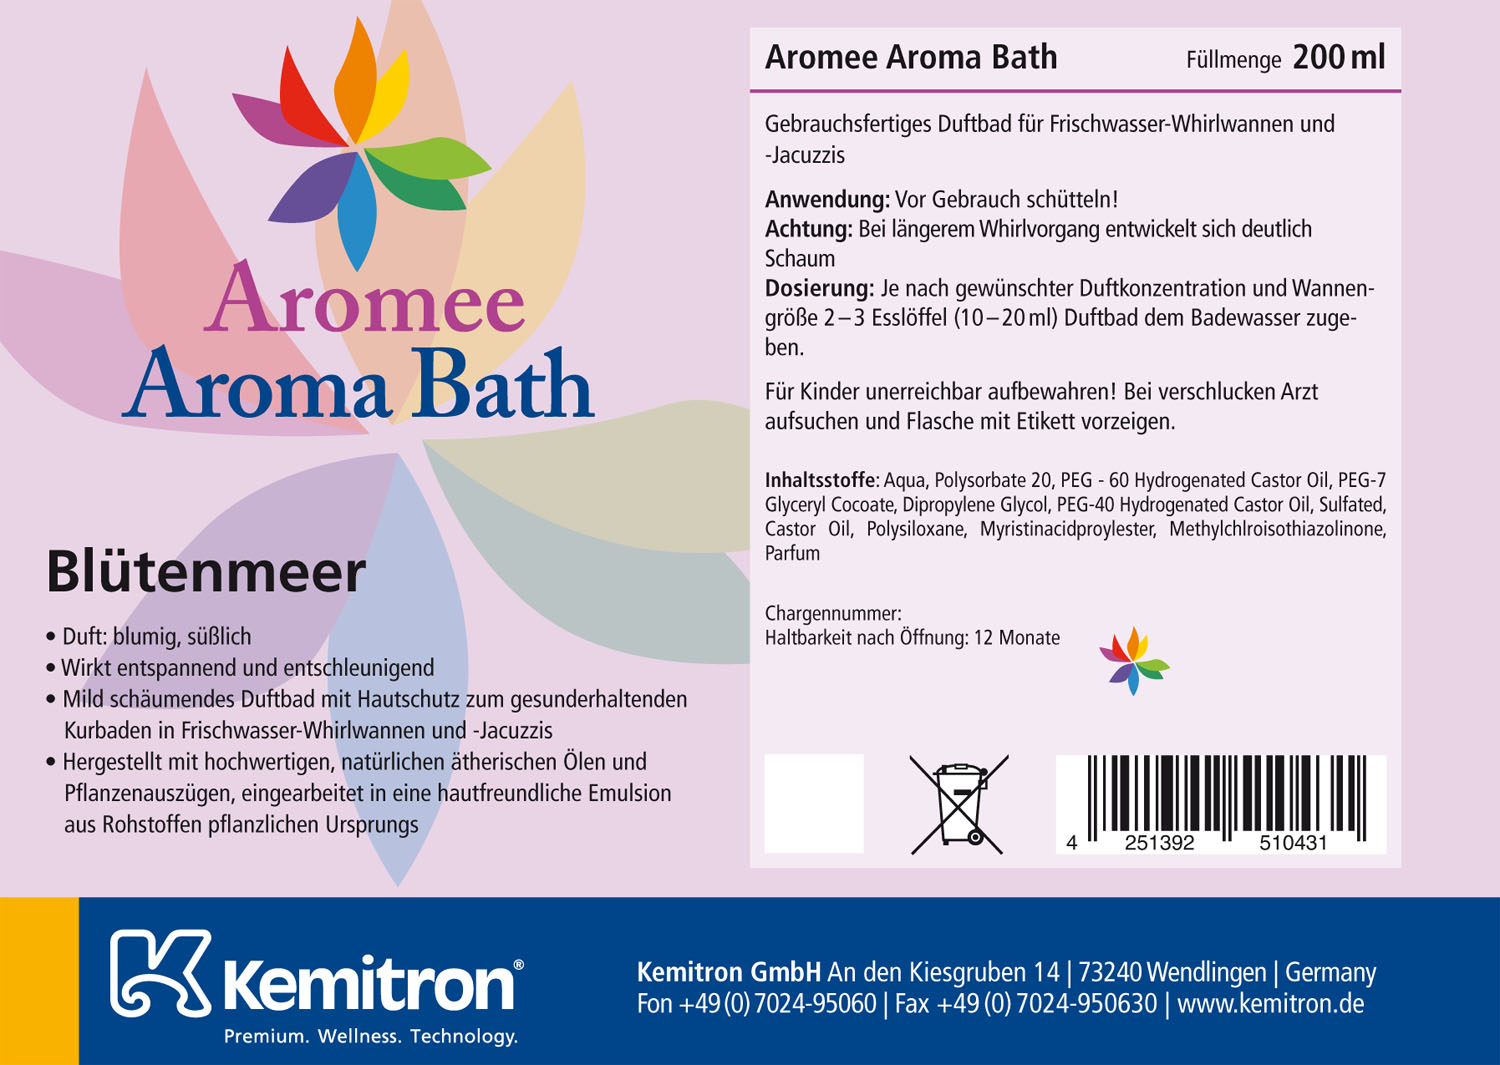 Aromee Aromabath "Blütenmeer"